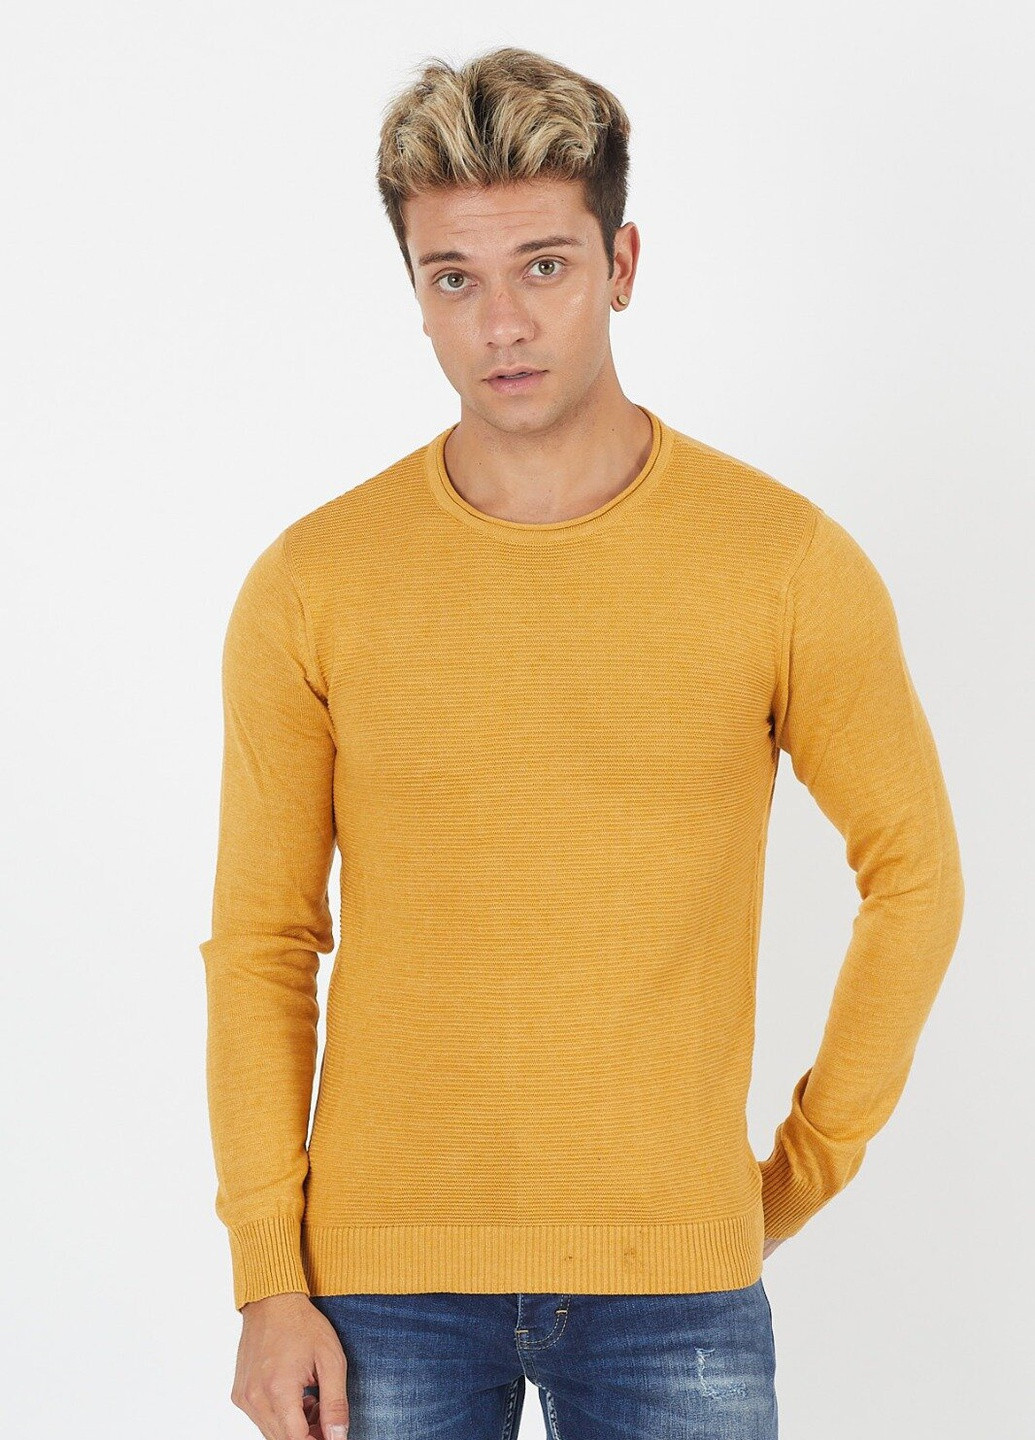 Горчичный демисезонный свитер 6655 xl (52) горчичный (2000903548768) Figo